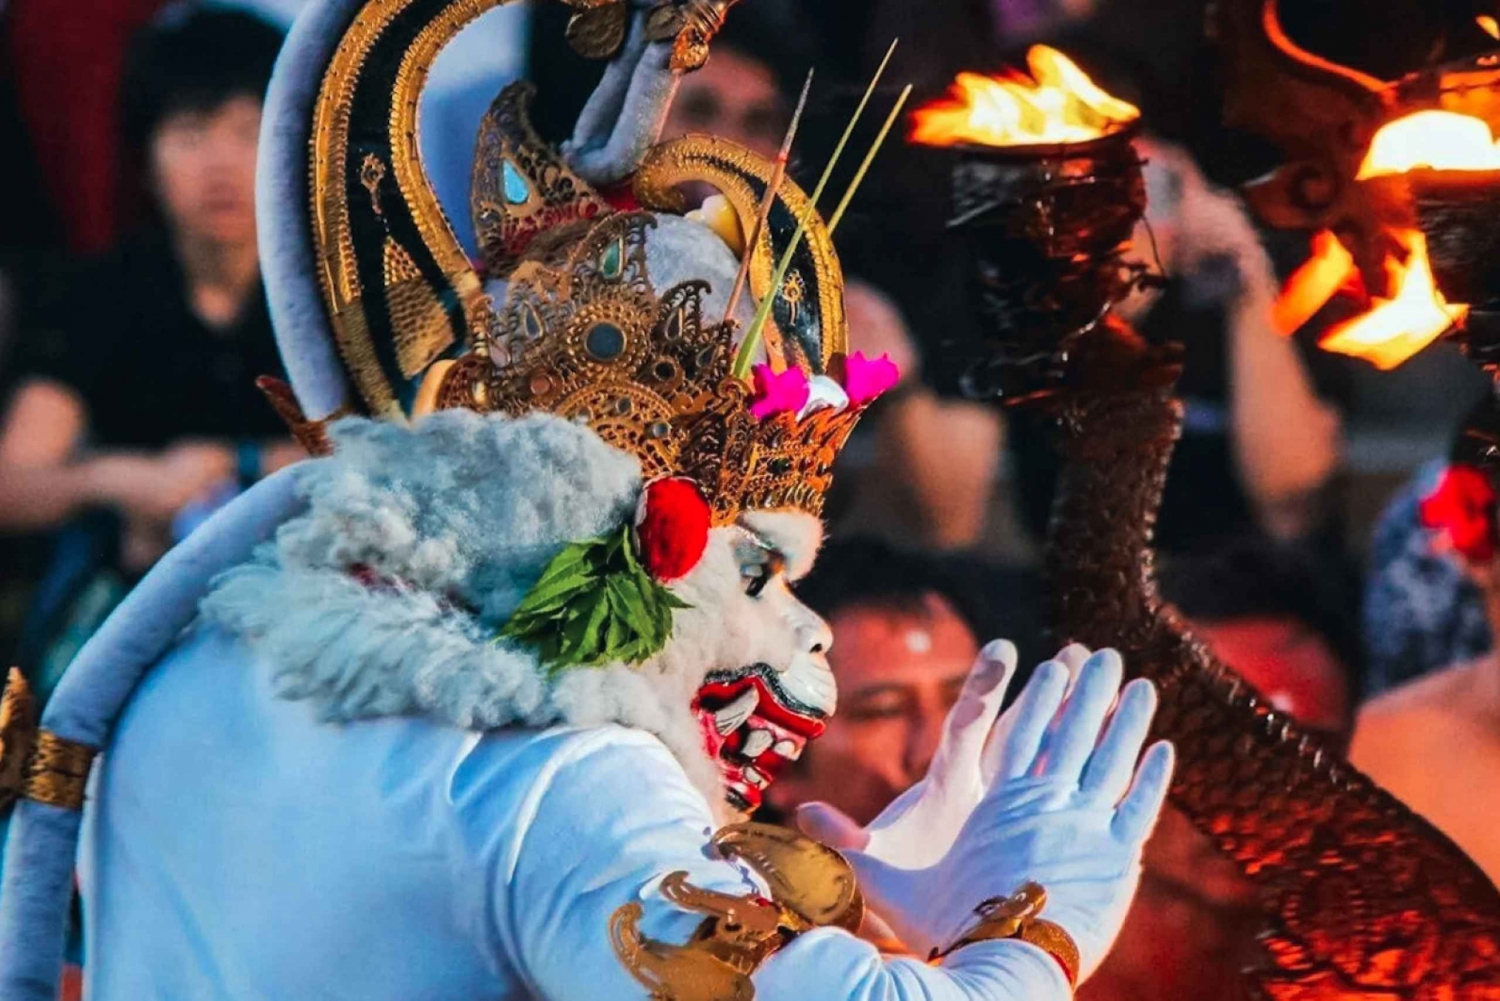 Bali: Uluwatu, Kecak Fire Dance, Jimbaran Bay Sunset Tour